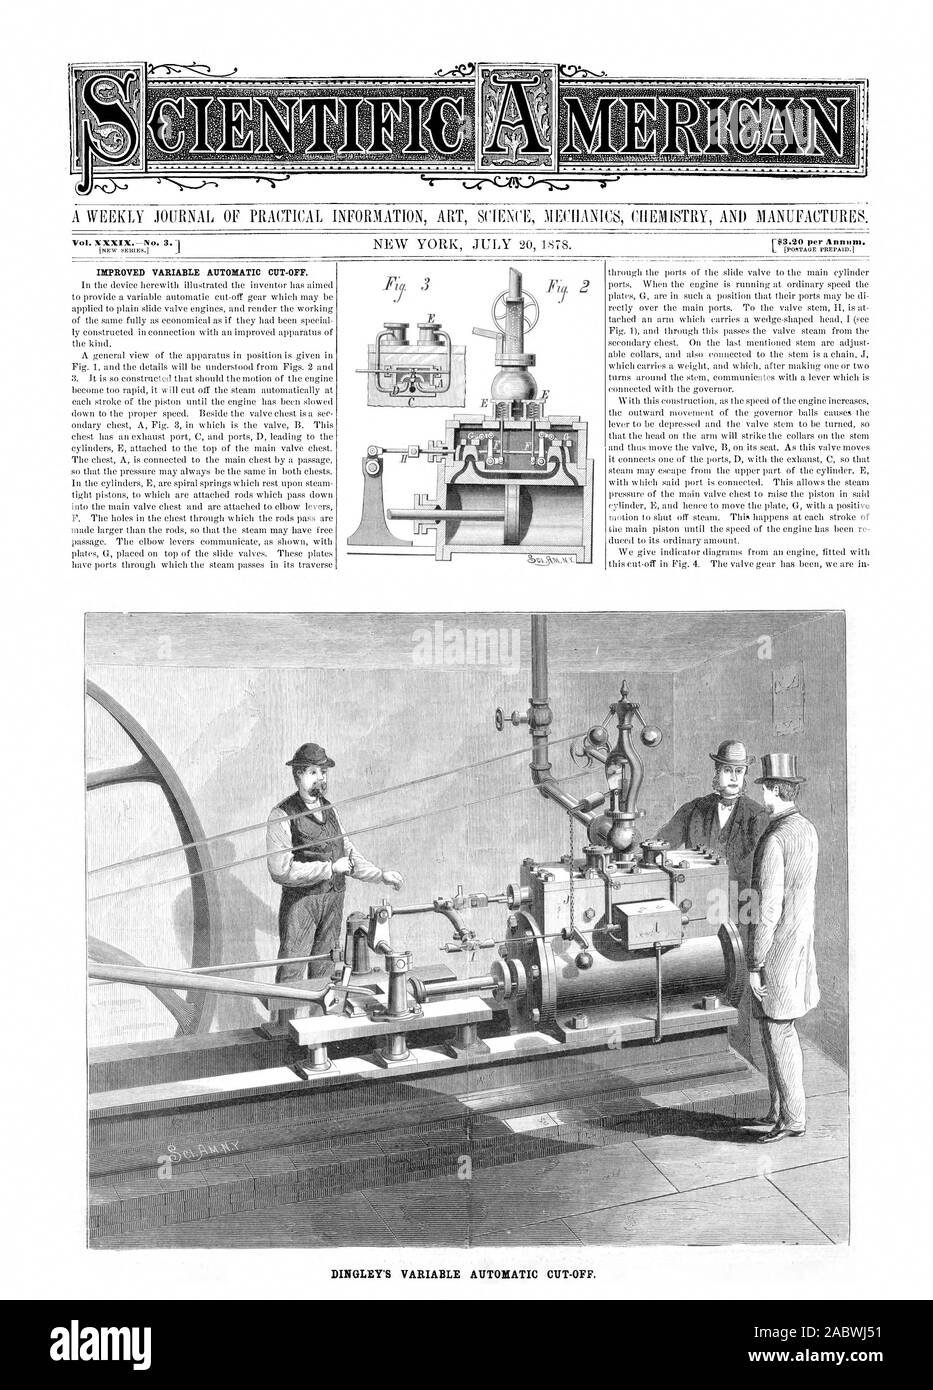 Variabile migliorato il taglio automatico-opt. DINGLEY variabile dell'interruzione automatica., Scientific American, 1878-07-20 Foto Stock